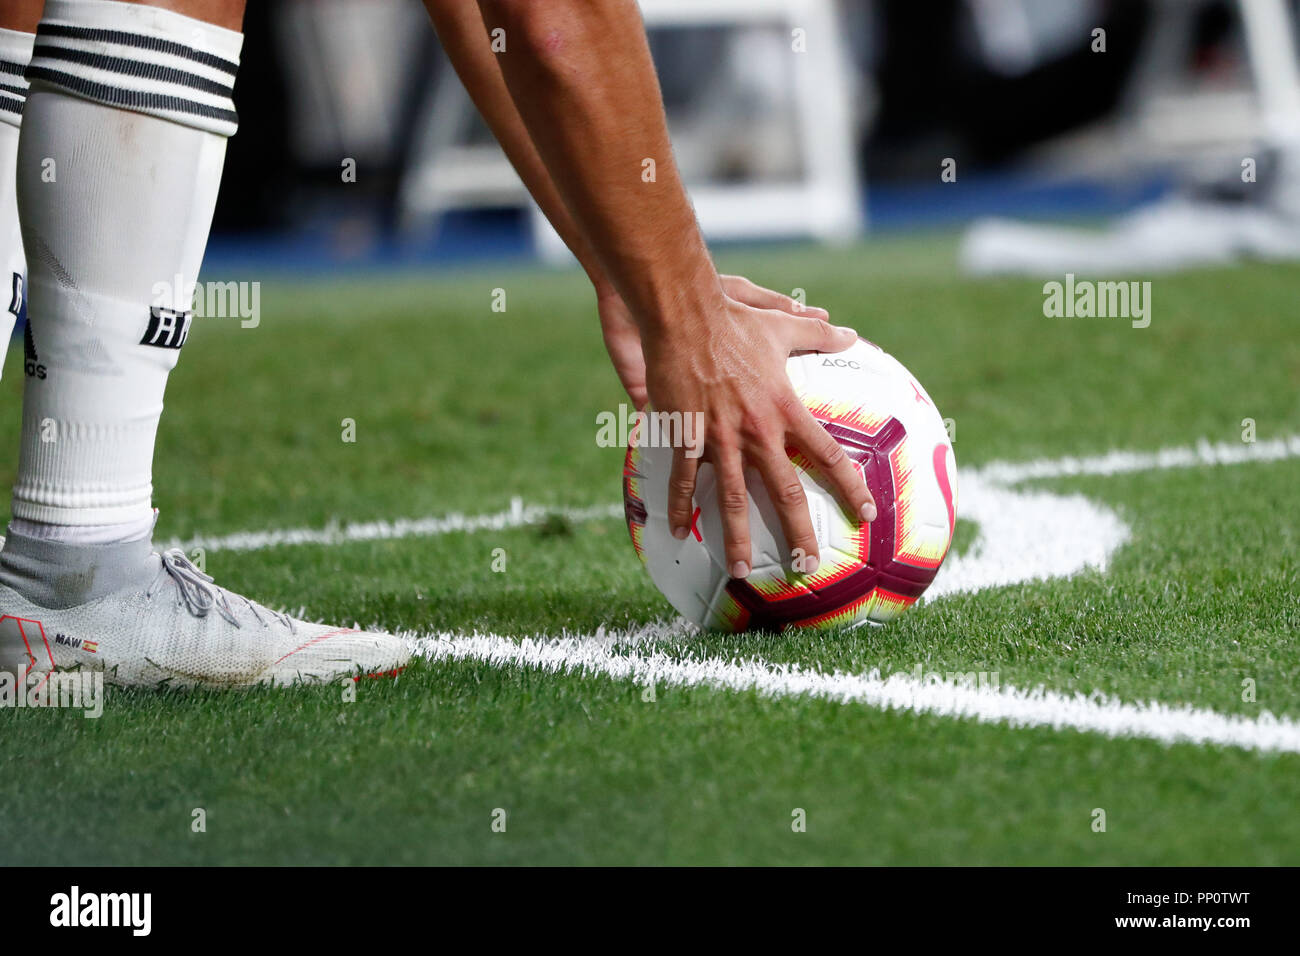 Septiembre 22, 2018 - Marco Asensio del Real Madrid con Nike balón del partido durante el campeonato de la (Español) partido de fútbol entre el Real Madrid RCD